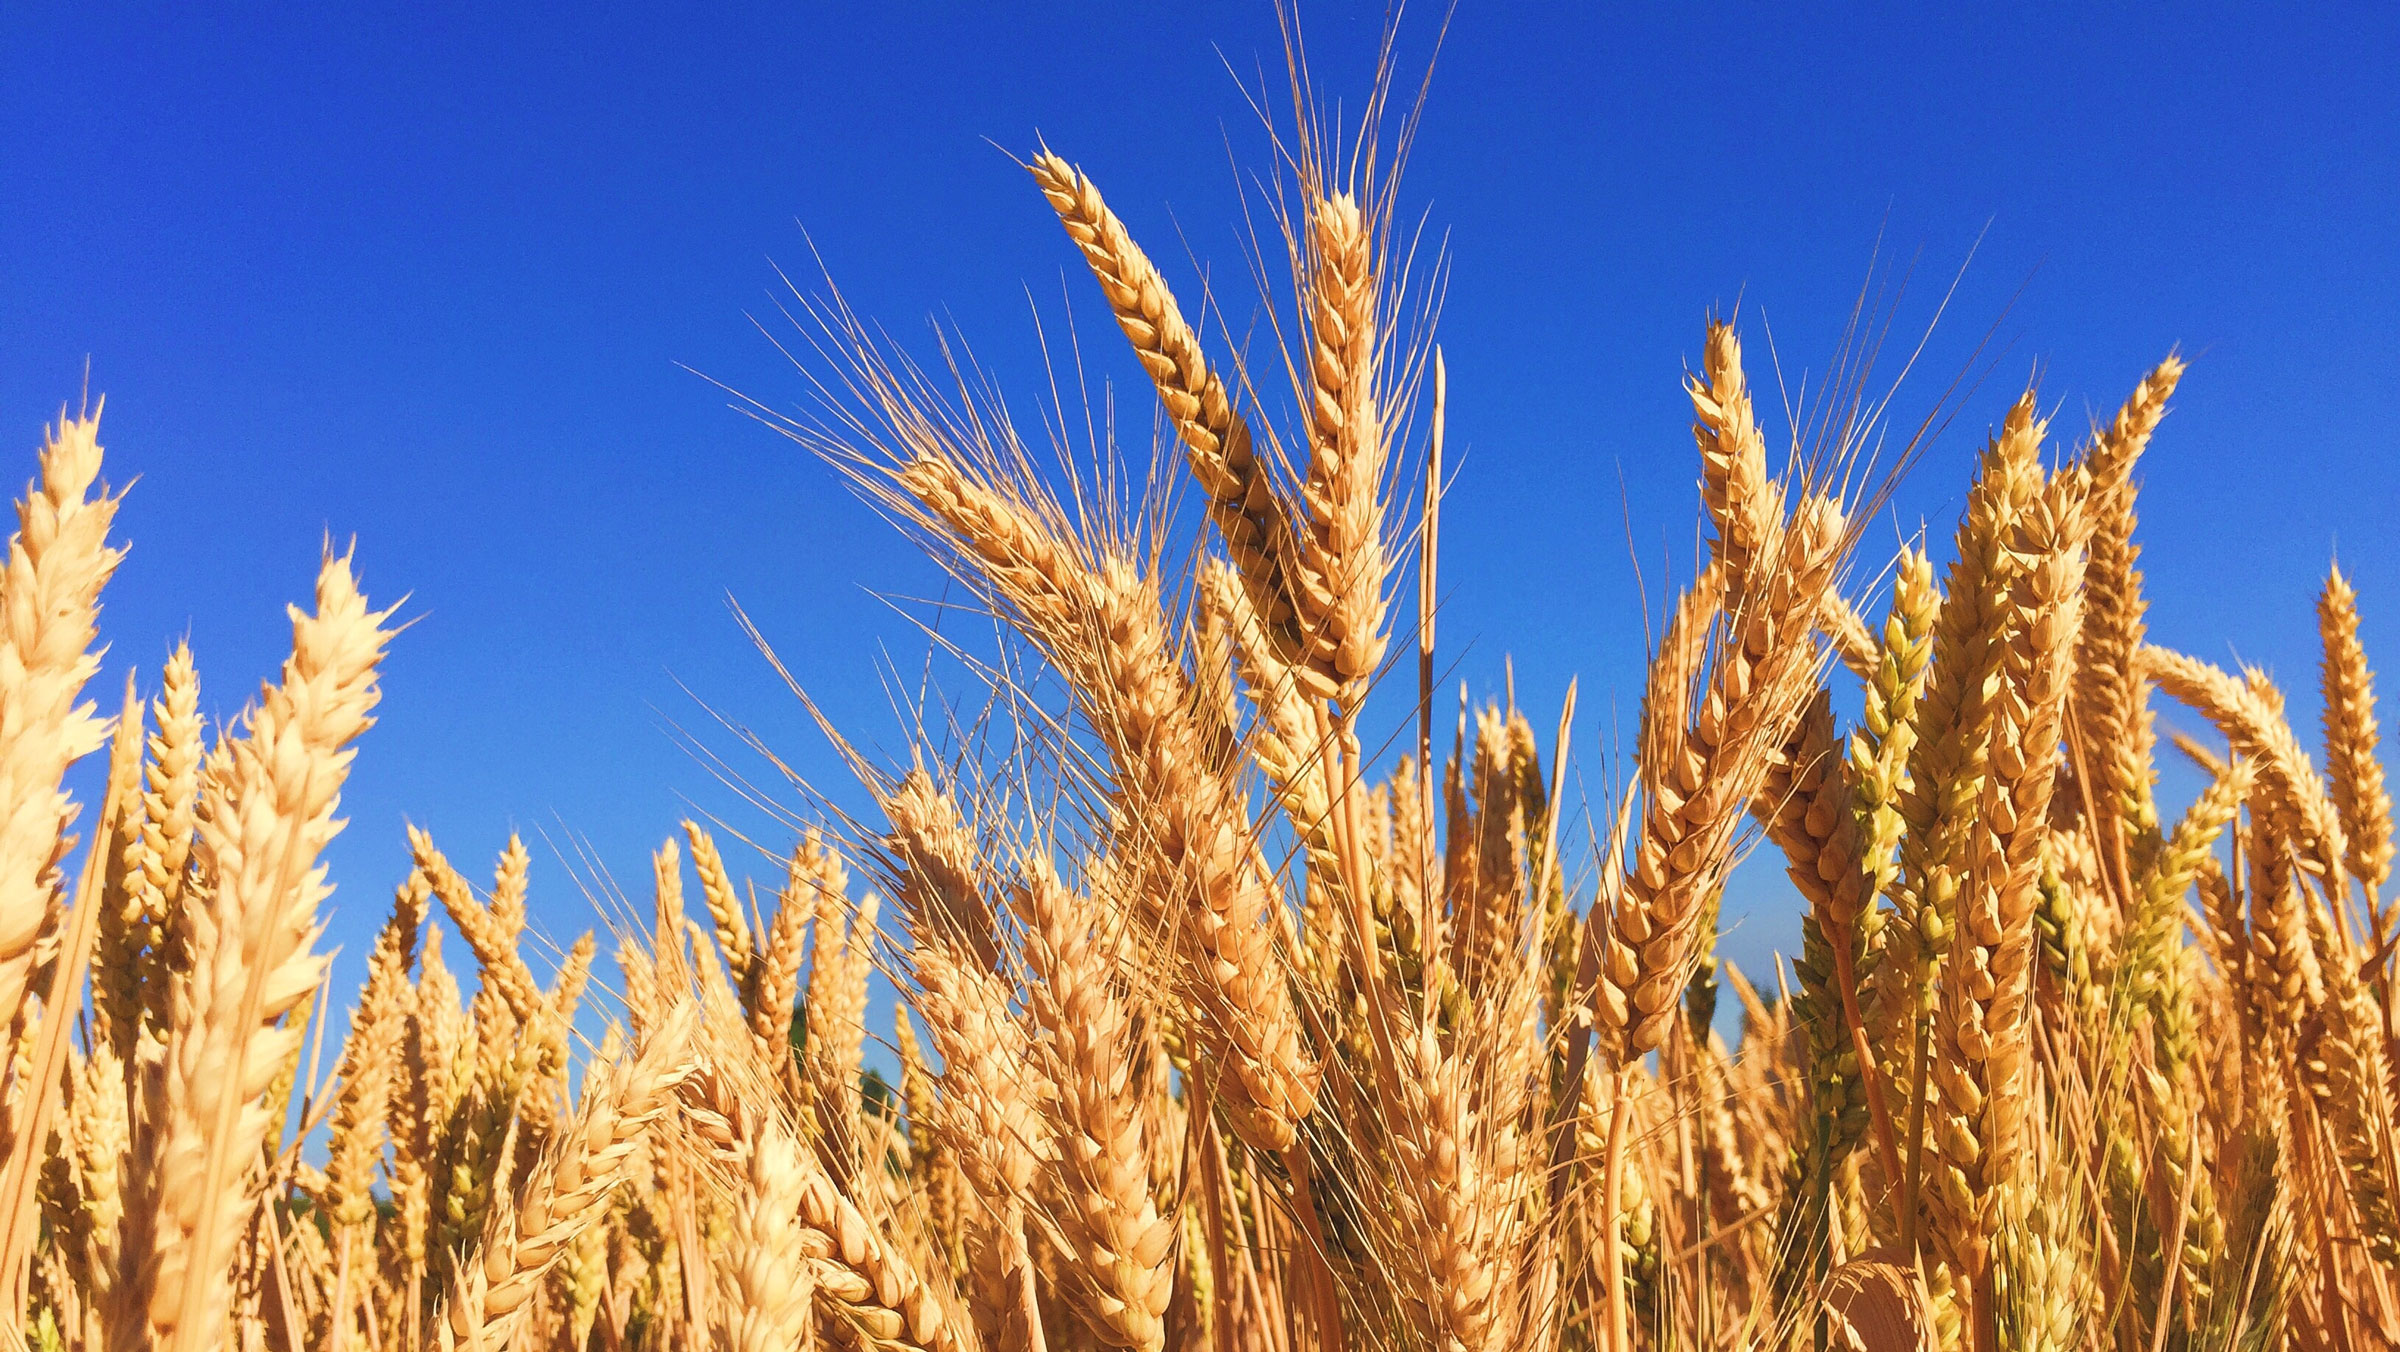 Field of wheat growing in Minnesota